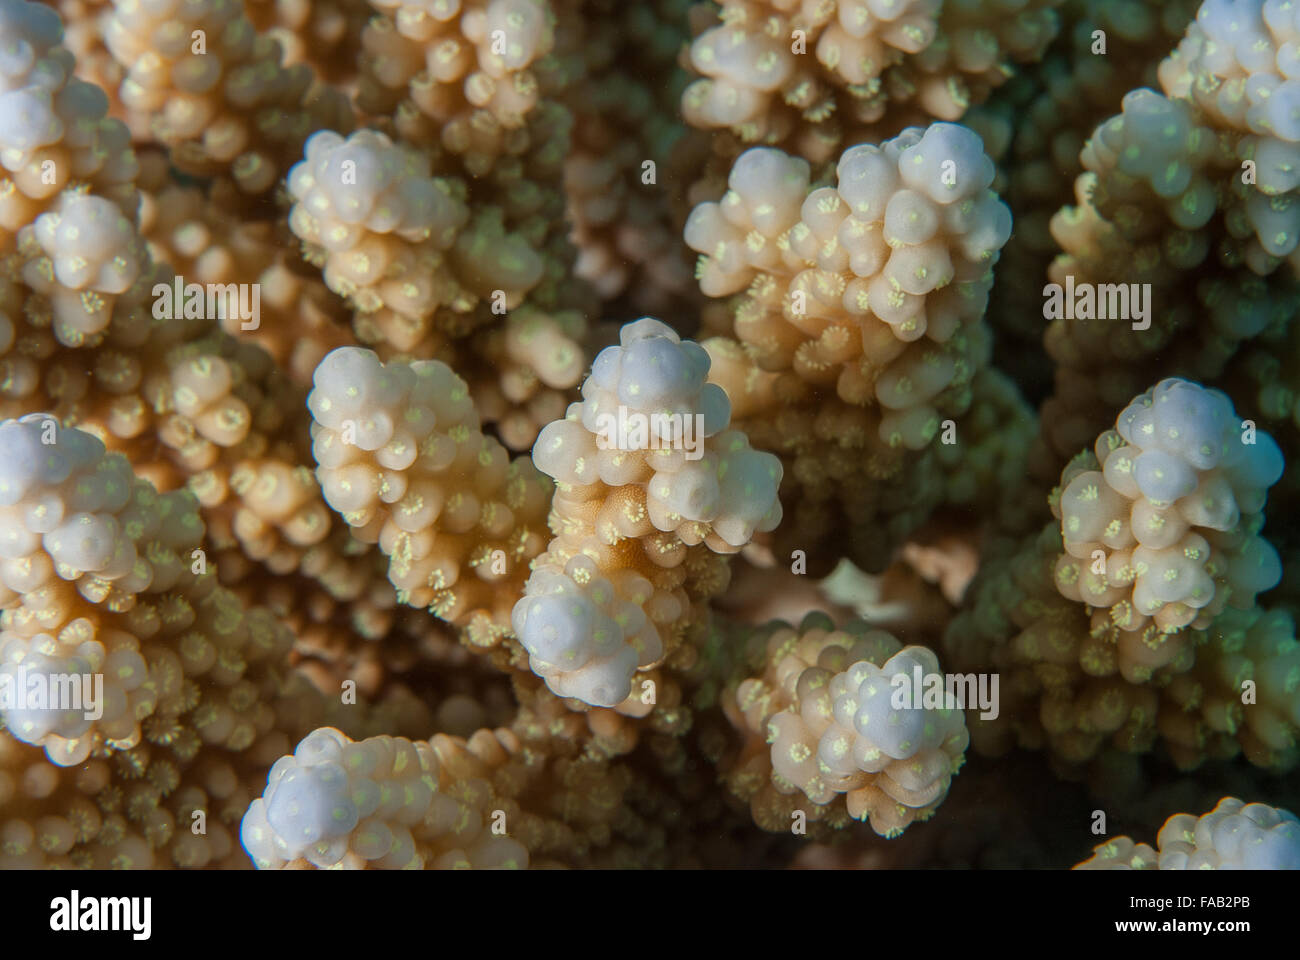 Acropora digitifera, Acroporidae, Sharm el Sheikh, Red Sea, Egypt Stock Photo